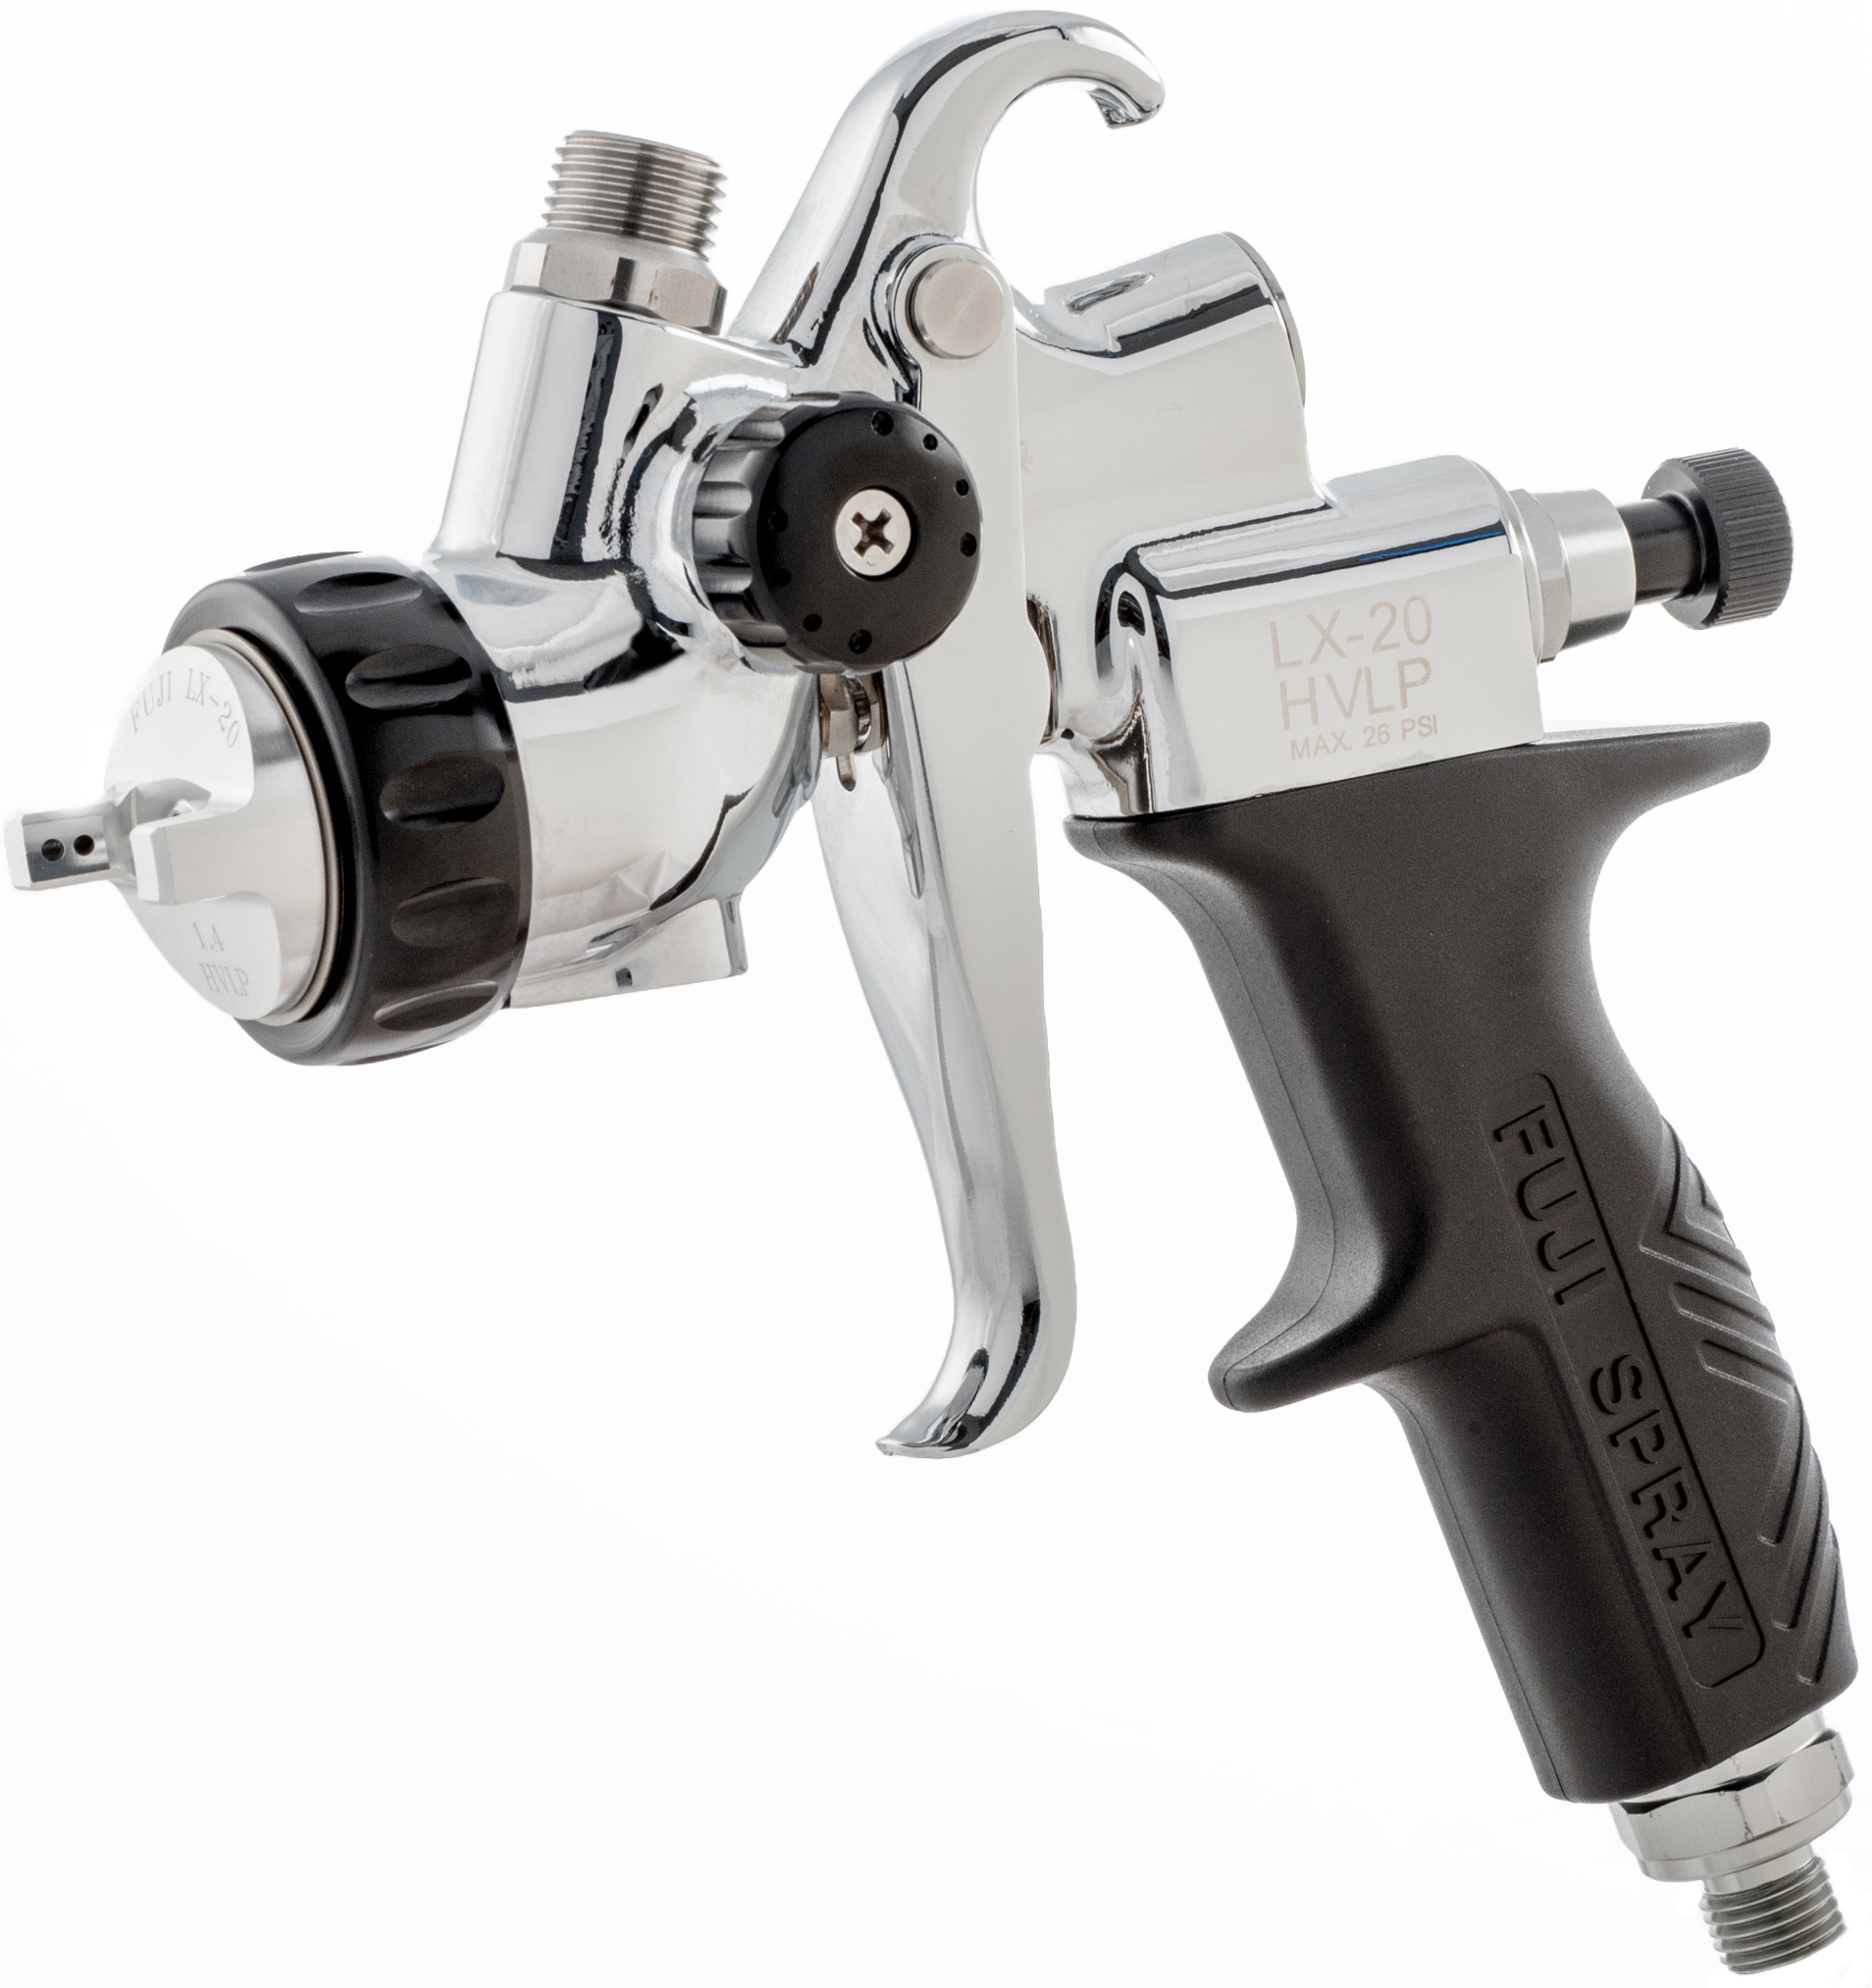 Pistolet de pulvérisation HVLP LX-20™ pour compresseur - Fuji Spray - Ardec  - Produits pour bois